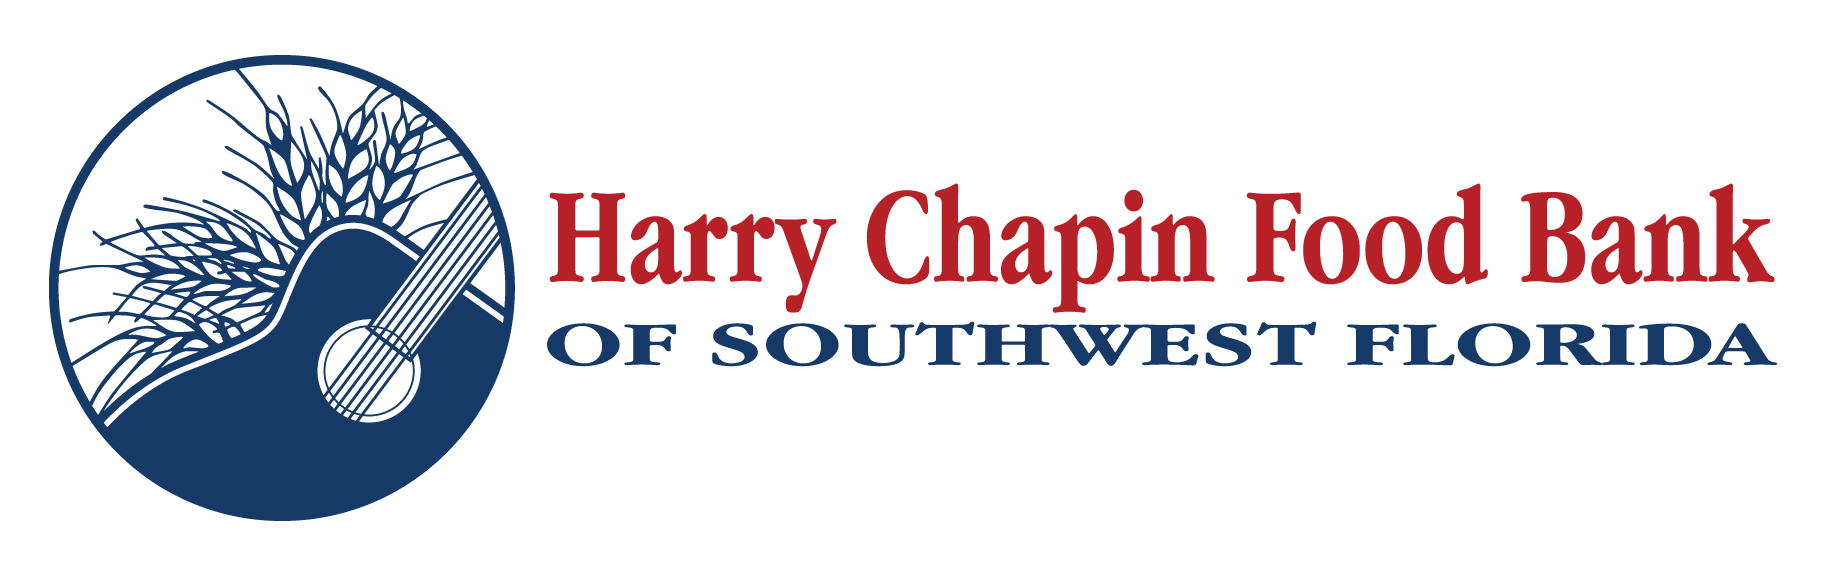 Donaciones de alimentos con Harry Chapin del 13 al 18 de junio